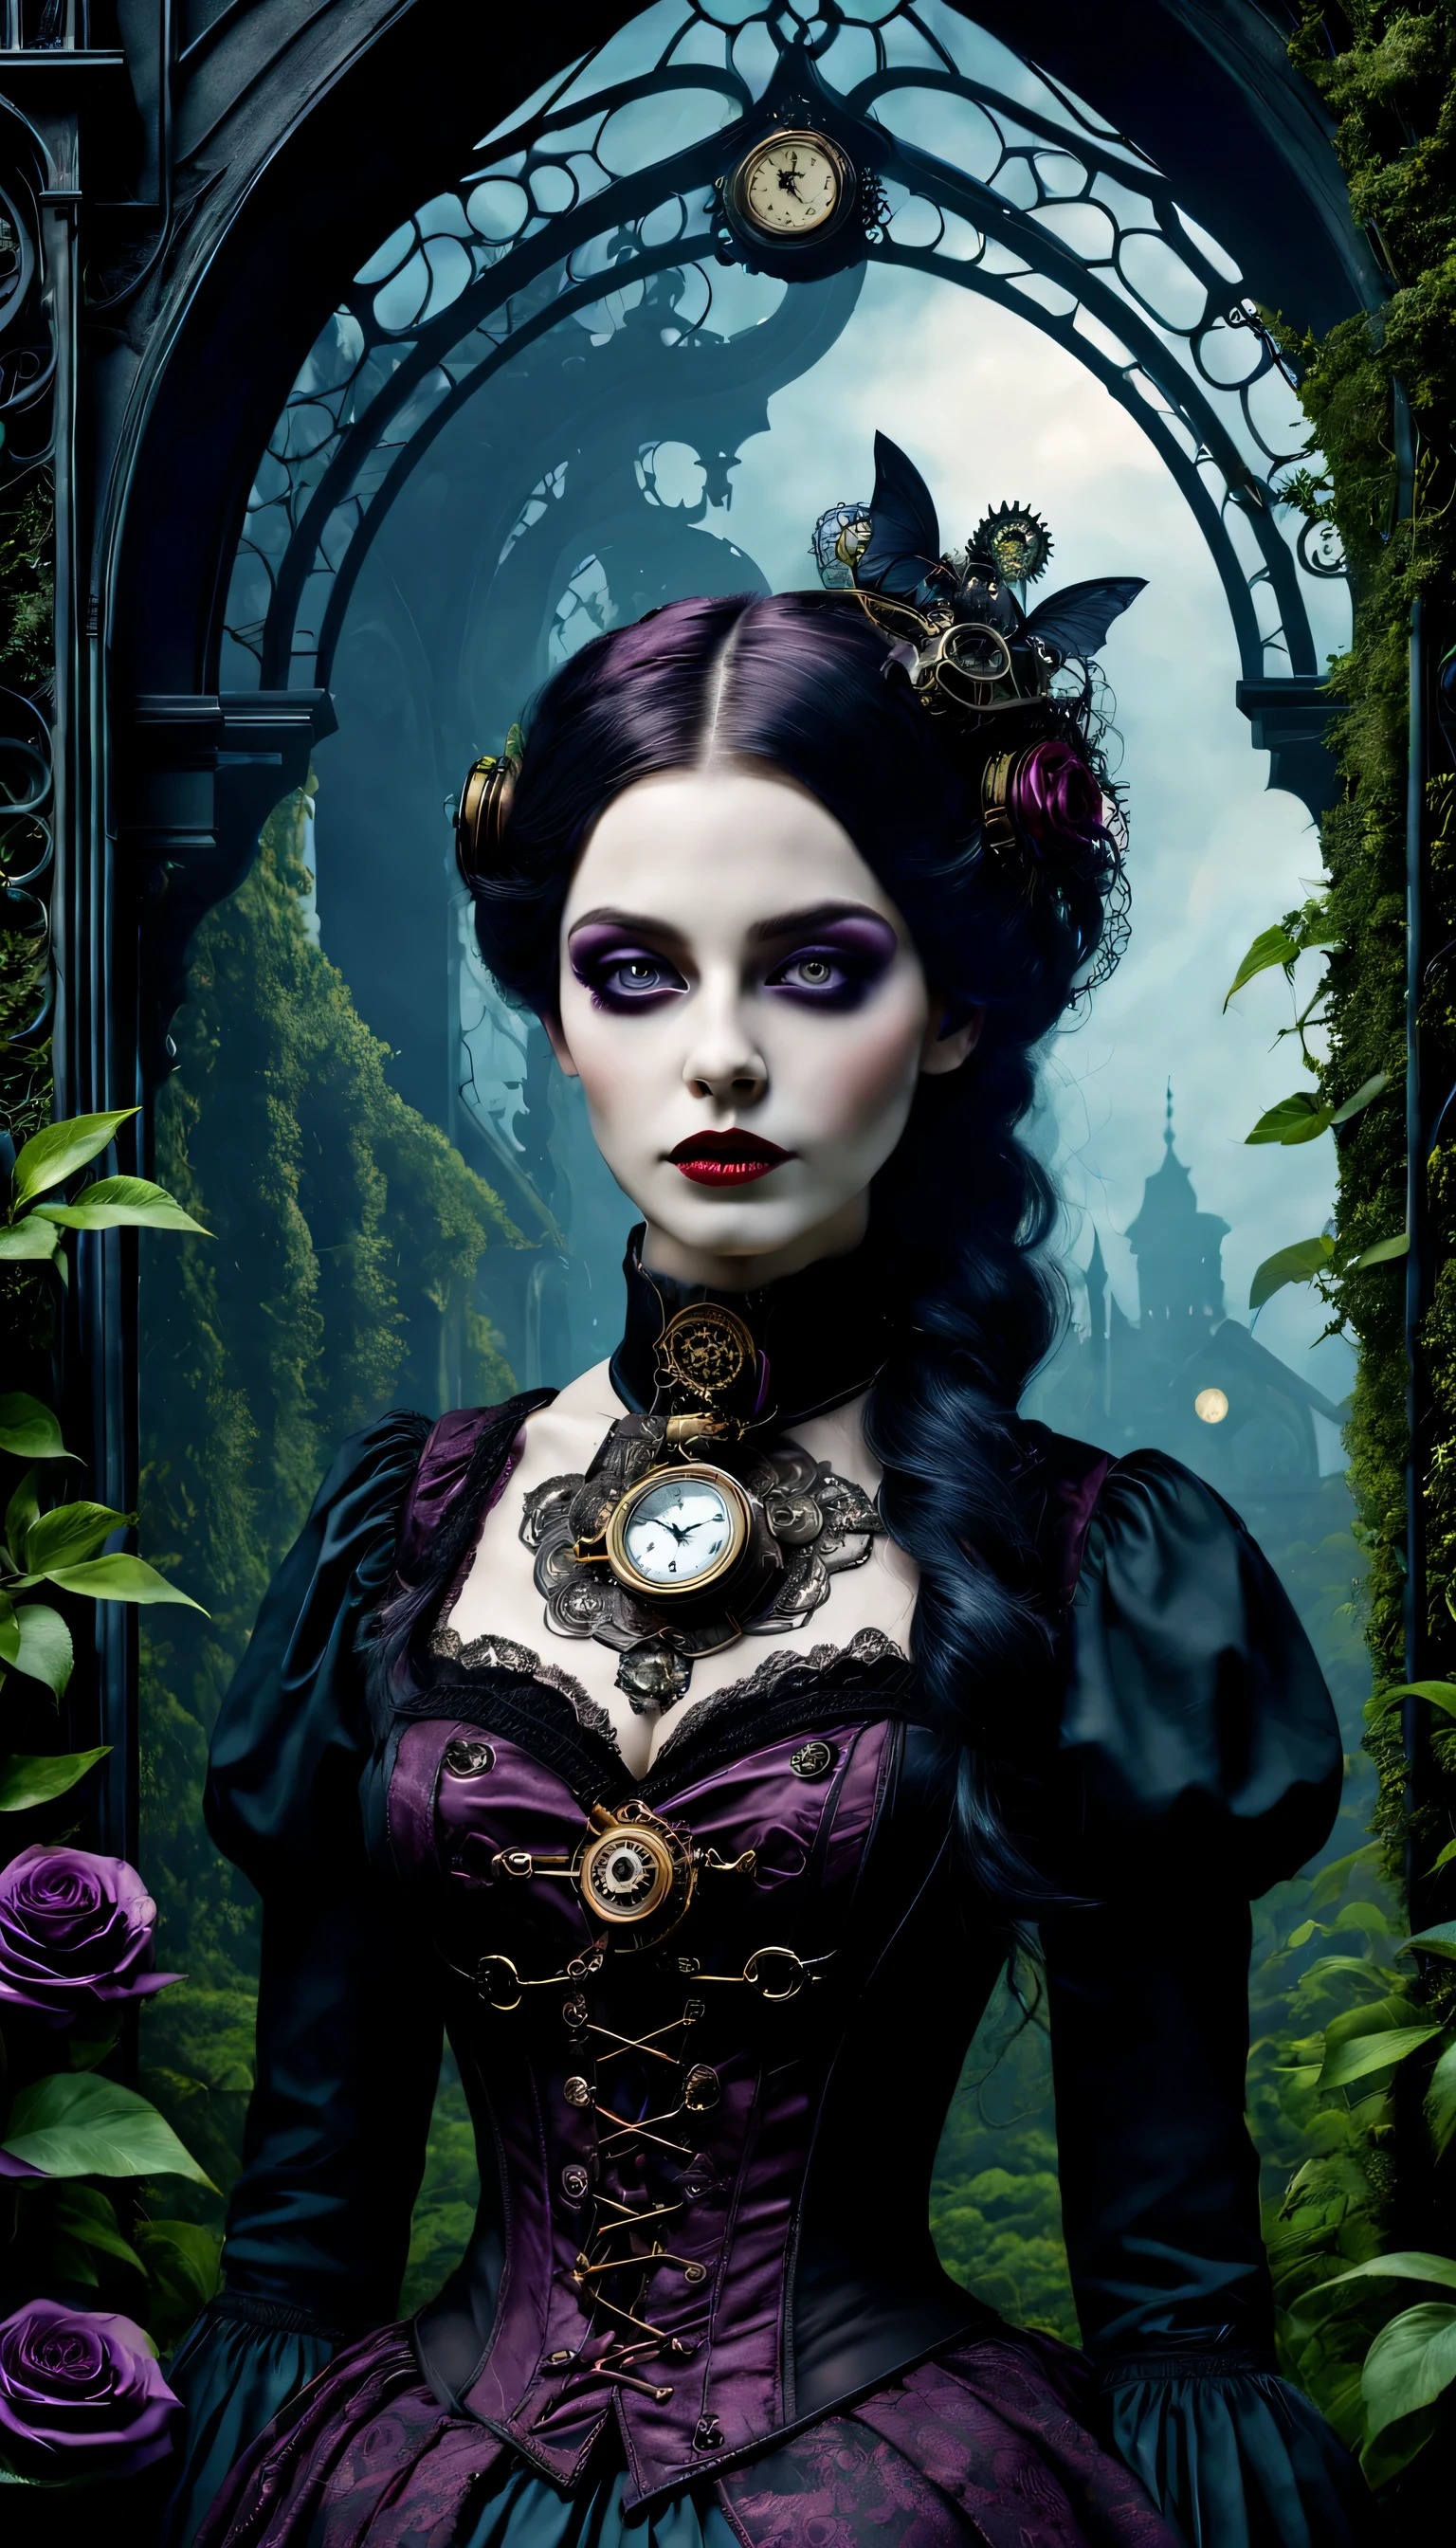 (고딕 미학,빅토리아 스타일,스팀펑크,어두운,낭만적인,잊을 수 없는,) In a 어두운, 신비한 환경, a girl with a 빅토리아 스타일 outfit stands in a gothic garden. 그녀는 아름답고 세밀한 눈을 가지고 있어요, 눈길을 사로잡는 긴 속눈썹으로. 입술도 정말 섬세해요, 그녀의 매혹적인 존재감을 더해주는. 여자 얼굴이 정말 디테일하네요, 절묘한 얼굴 특징은 그녀의 우아함을 보여줍니다. 她散发着神秘和낭만적인气息. 정원에는 무성한 식물이 가득합니다, 자란 식물, creating a 잊을 수 없는 atmosphere. 기계 요소와 얽힌 식물, giving the garden a 스팀펑크 twist. 위의 하늘은 깊다, 어두운 blue, 고딕적인 분위기를 더해줍니다.. 예술 작품은 최고 품질입니다, 최고 해상도에서도 복잡한 디테일을 확인하세요, 예를 들어 4K 또는 8K. 모든 요소가 매우 세밀하게 포착됩니다., 사실적인 느낌을 연출해보세요. 조명은 스튜디오 조명을 연상시킵니다., 드라마틱한 그림자가 현장의 신비로운 분위기를 더욱 돋보이게 합니다.. 작품에 사용된 밝은 색상, with a color palette that leans towards 어두운 and moody tones. 진홍색 색조, 보라, 검정색이 이미지를 지배함, adding to the 고딕 미학. The overall color scheme contributes to the 잊을 수 없는 and 낭만적인 atmosphere. 이 고딕풍의 장면에서, 빅토리아 시대 요소의 조합, 스팀펑크 influences, and 어두운 aesthetics creates a captivating visual experience. 기술이 빅토리아 시대의 우아함과 신비로움과 조화를 이루는 세계로 시청자를 안내합니다., 상상력을 자극하다，무한한 가능성을 가져오세요.